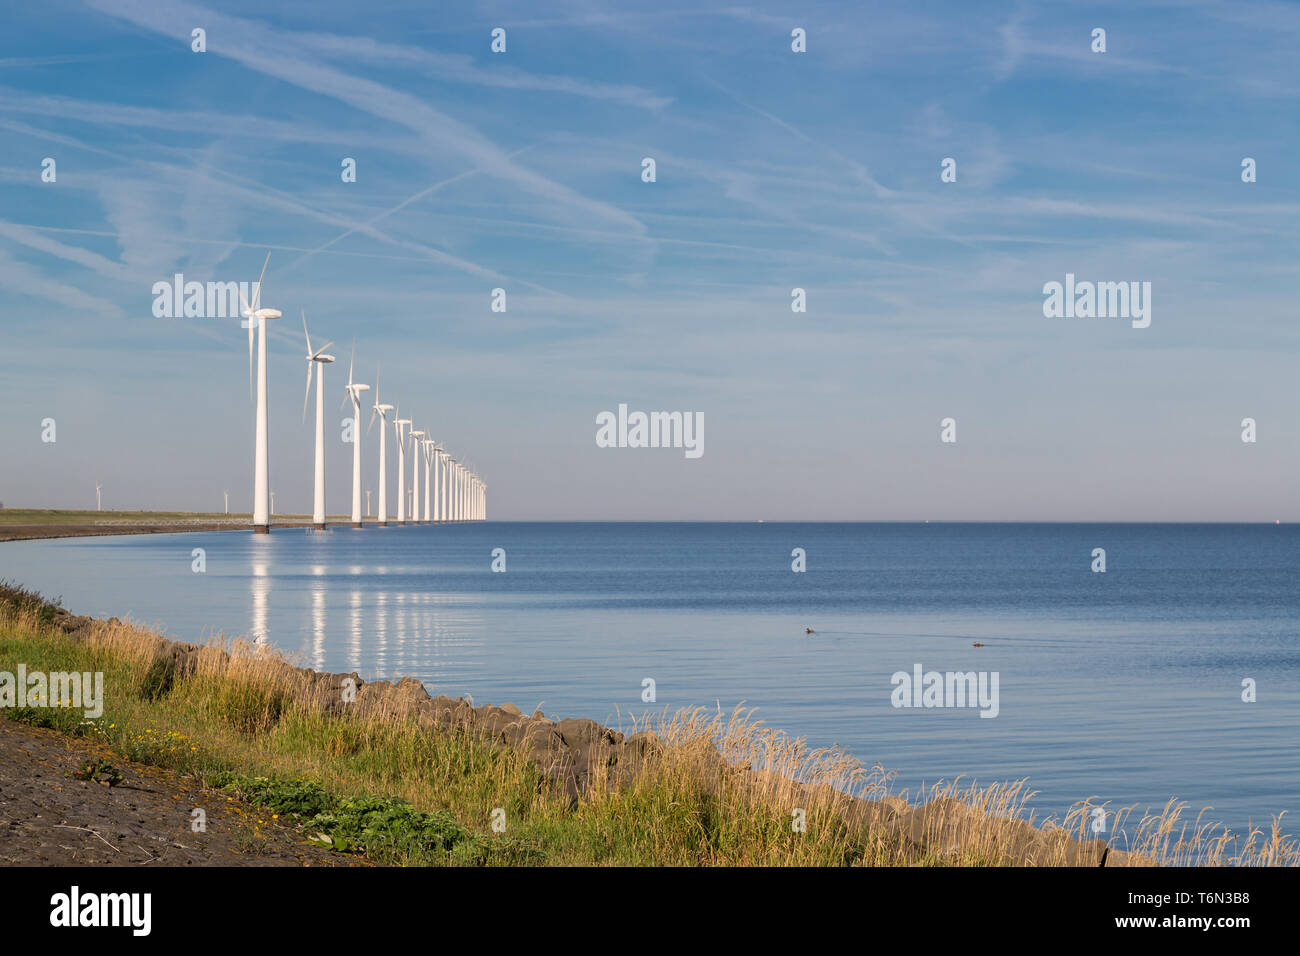 Lunga fila off shore turbine eoliche in mare olandese Foto Stock